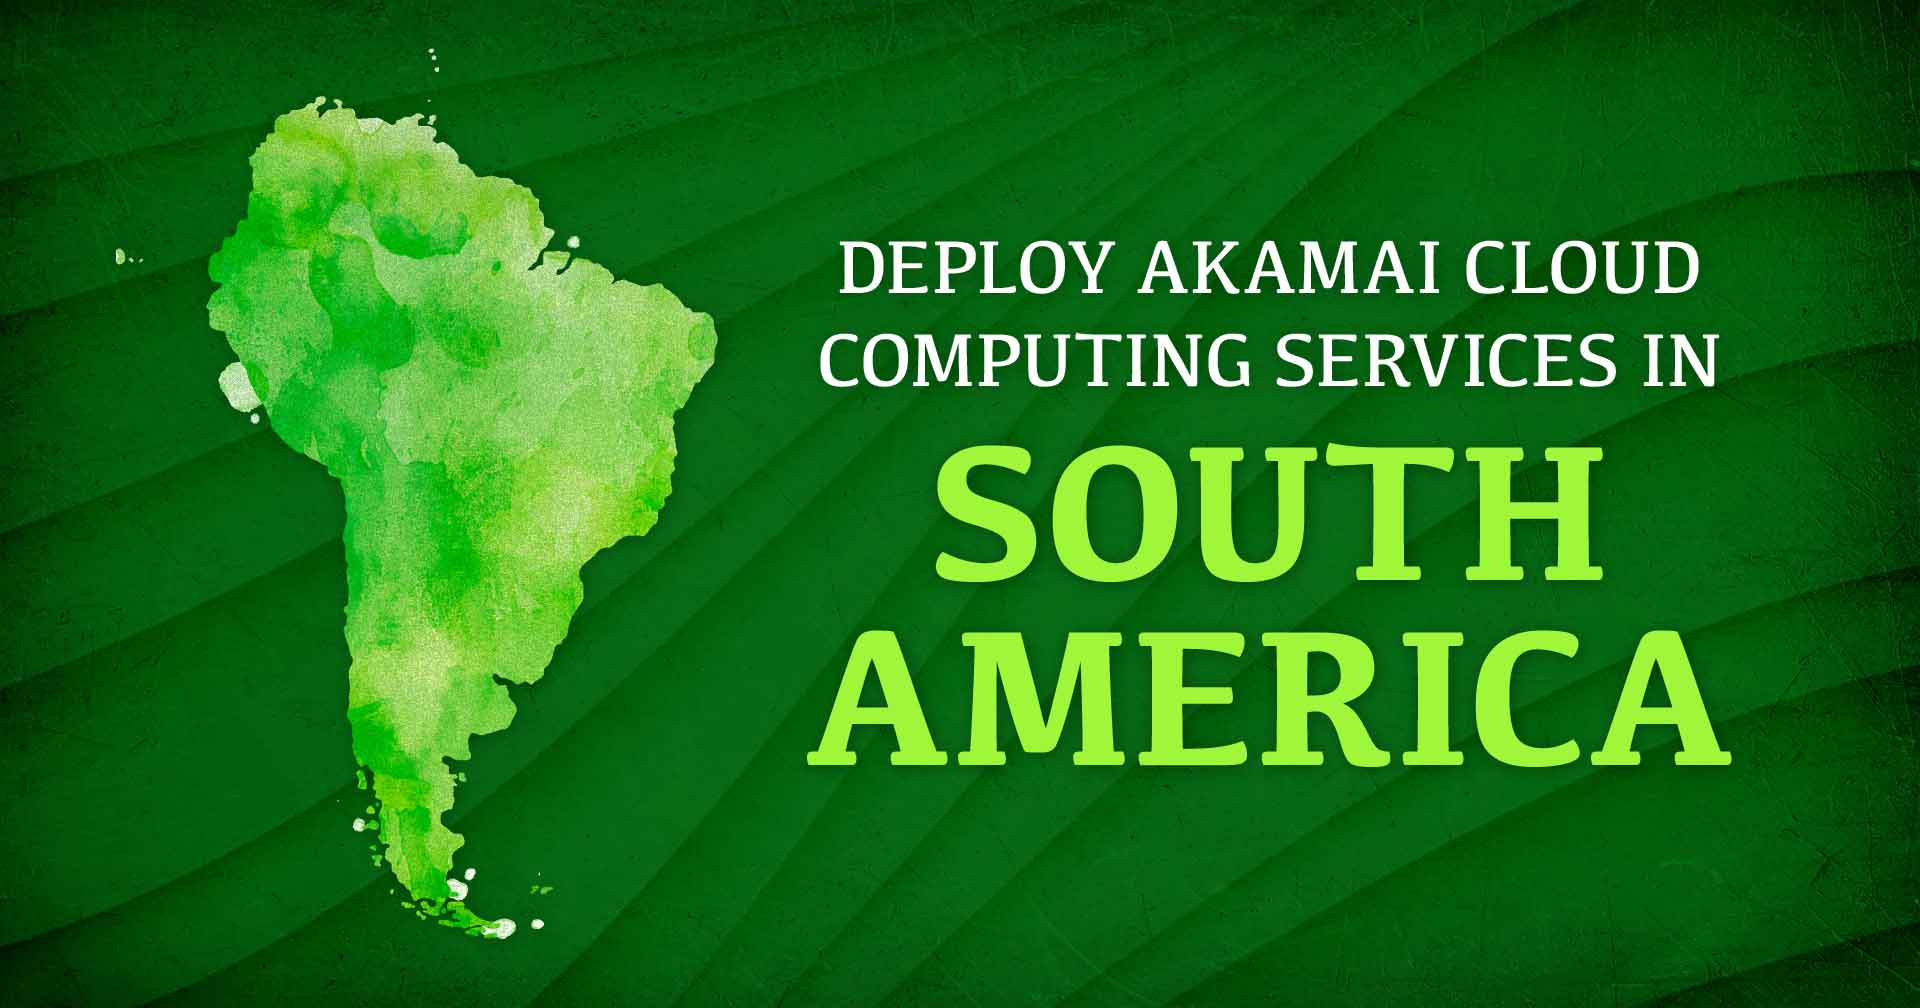 Imagen de Sudamérica junto al texto Implementación de los Servicios de Cloud Computing de Akamai en Sudamérica.